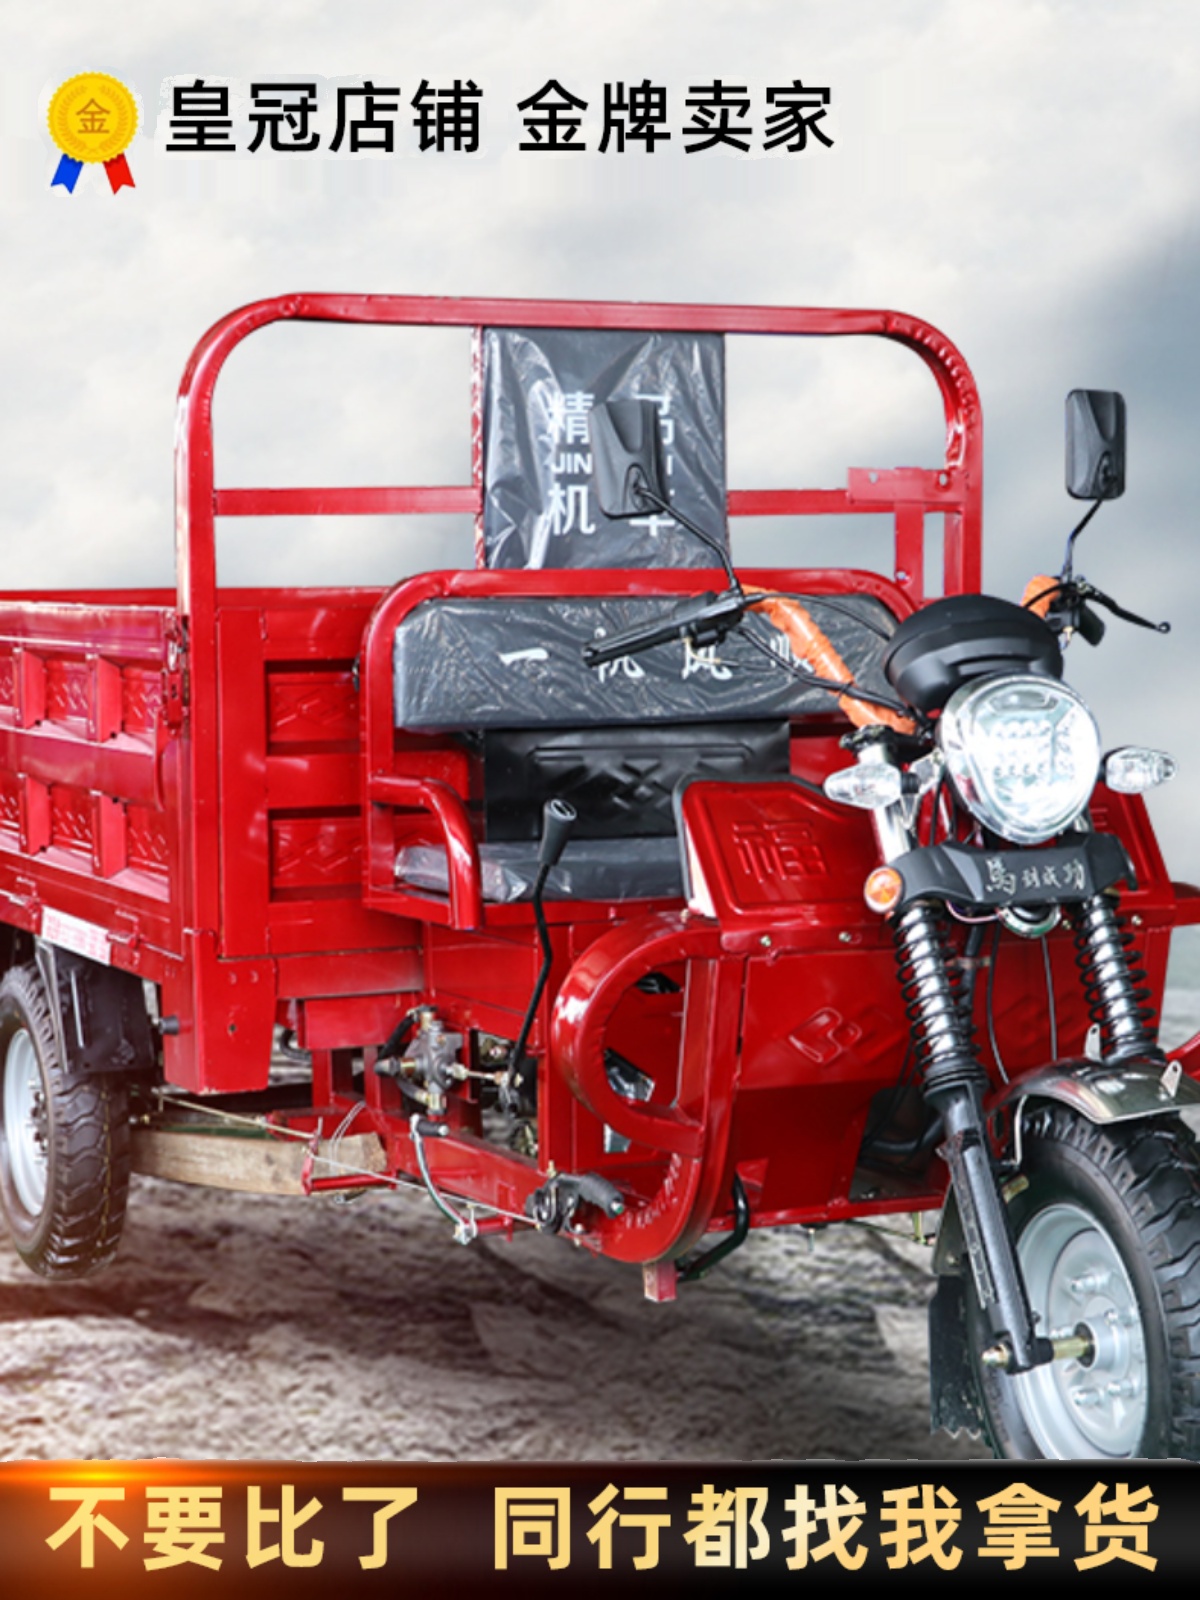 水冷燃油三轮摩托车汽油发动机货运可上牌家用助力农用燃油三轮车